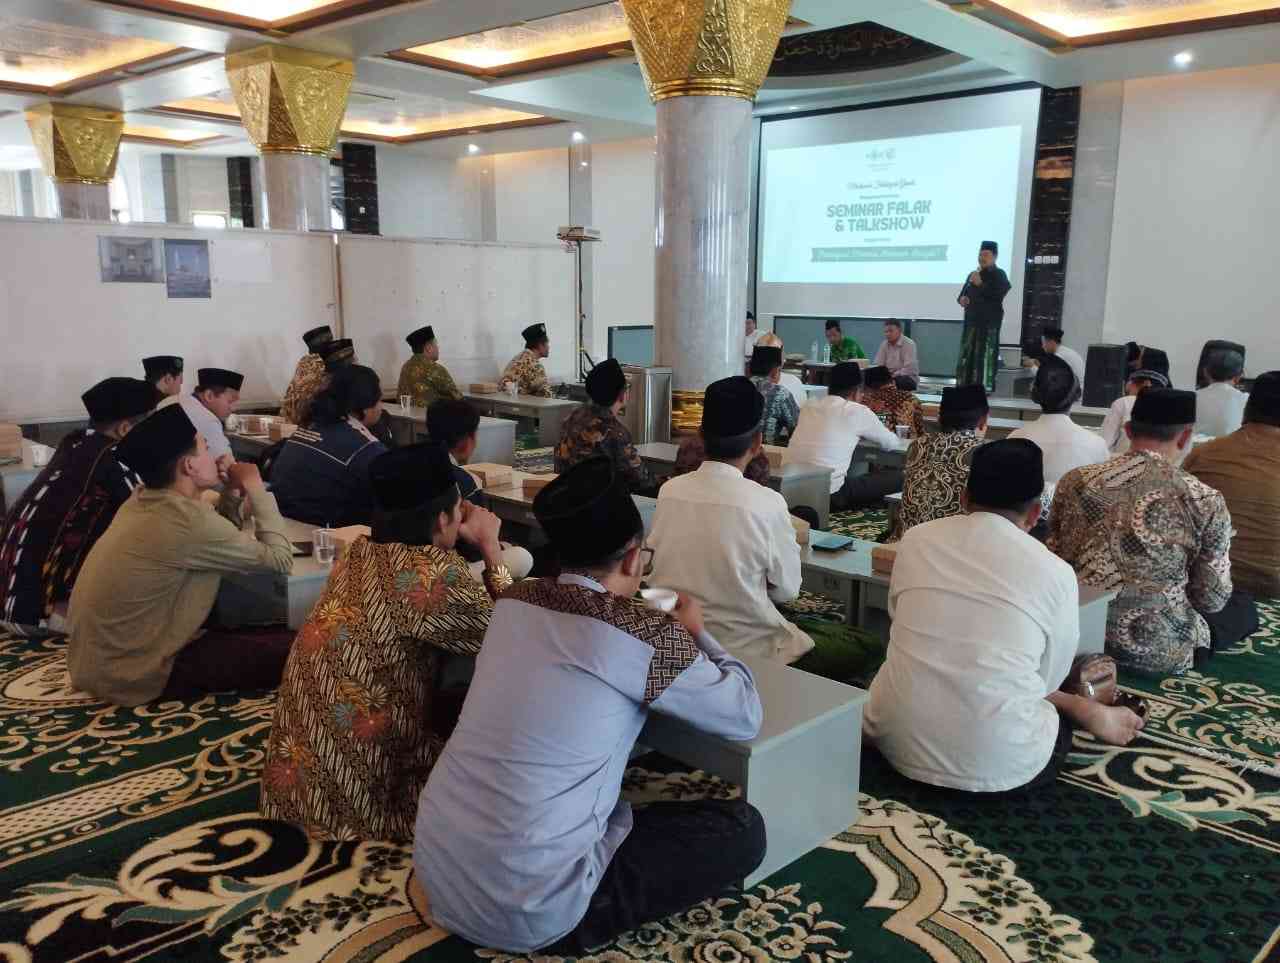 Pengurus Cabang Lembaga Falakiyah Nahdlatul Ulama Gresik menggelar Seminar Falak dan Talkshow. Foto: dok PC LFNU Gresik/NUGres